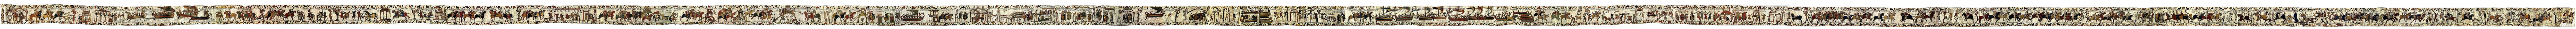 Der vollständige Teppich von Bayeux